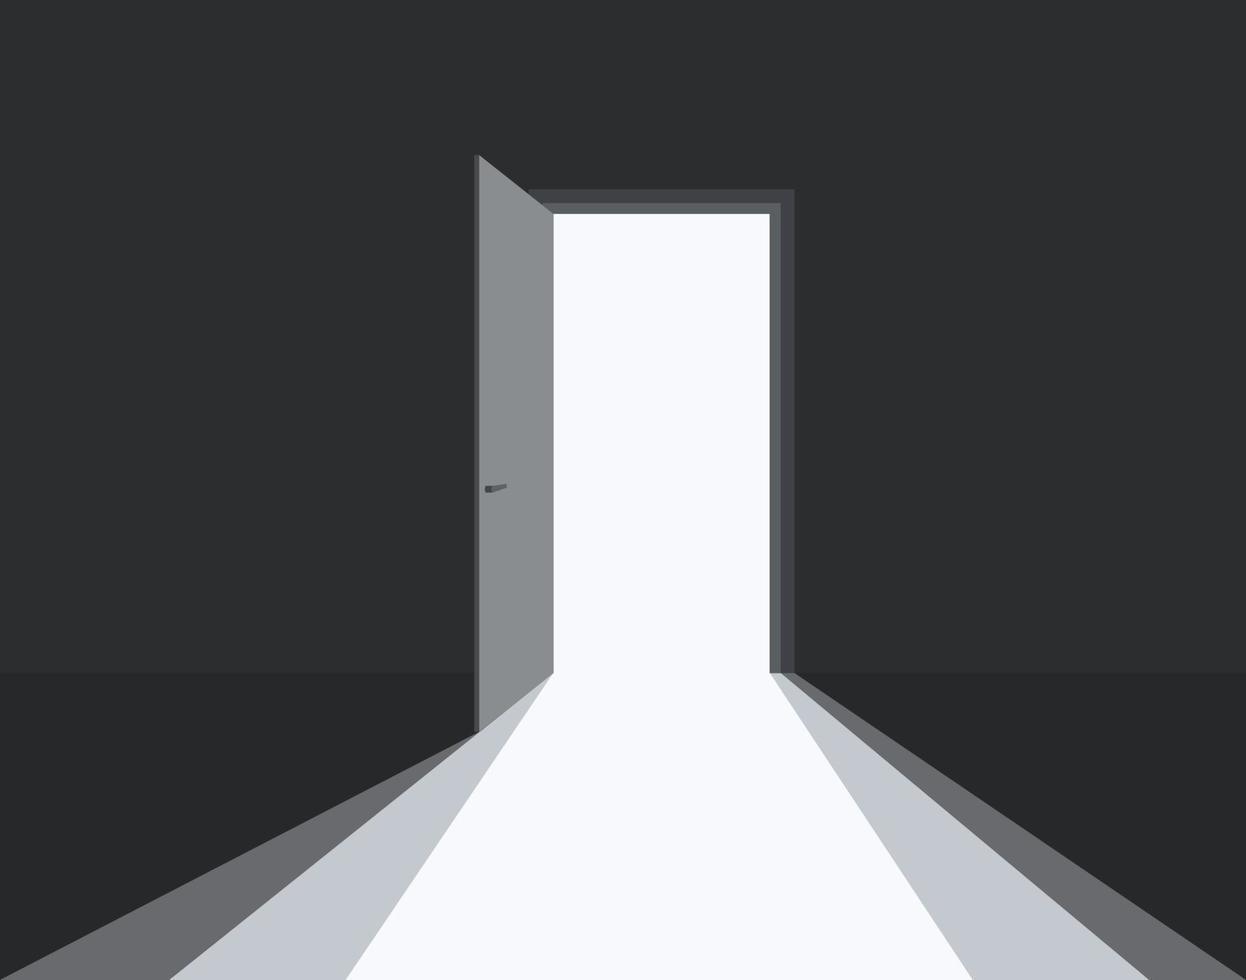 Open deur in donker kamer symbool van hoop of oplossing. licht in kamer door Open deur. vector illustratie